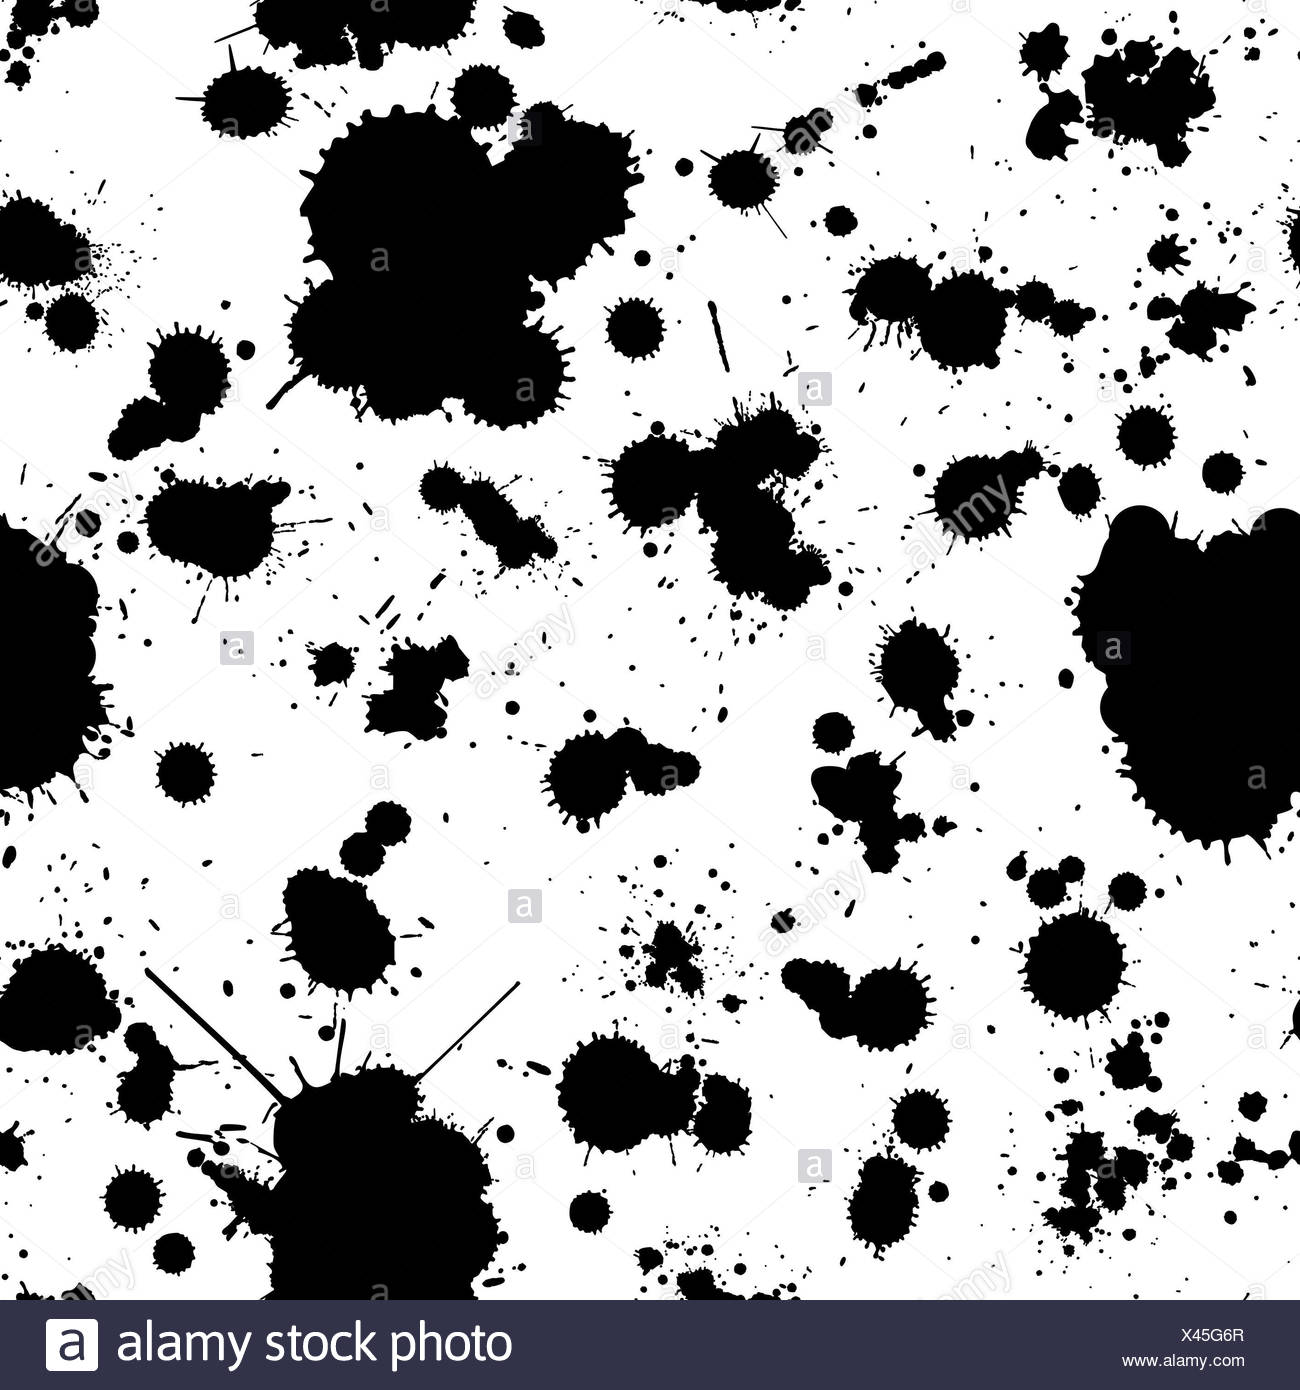 Abstract Grunge Nahtlose Muster In Schwarz Und Weiss Einfach Zu Bearbeiten Hintergrund Fur Ihr Design Stockfotografie Alamy